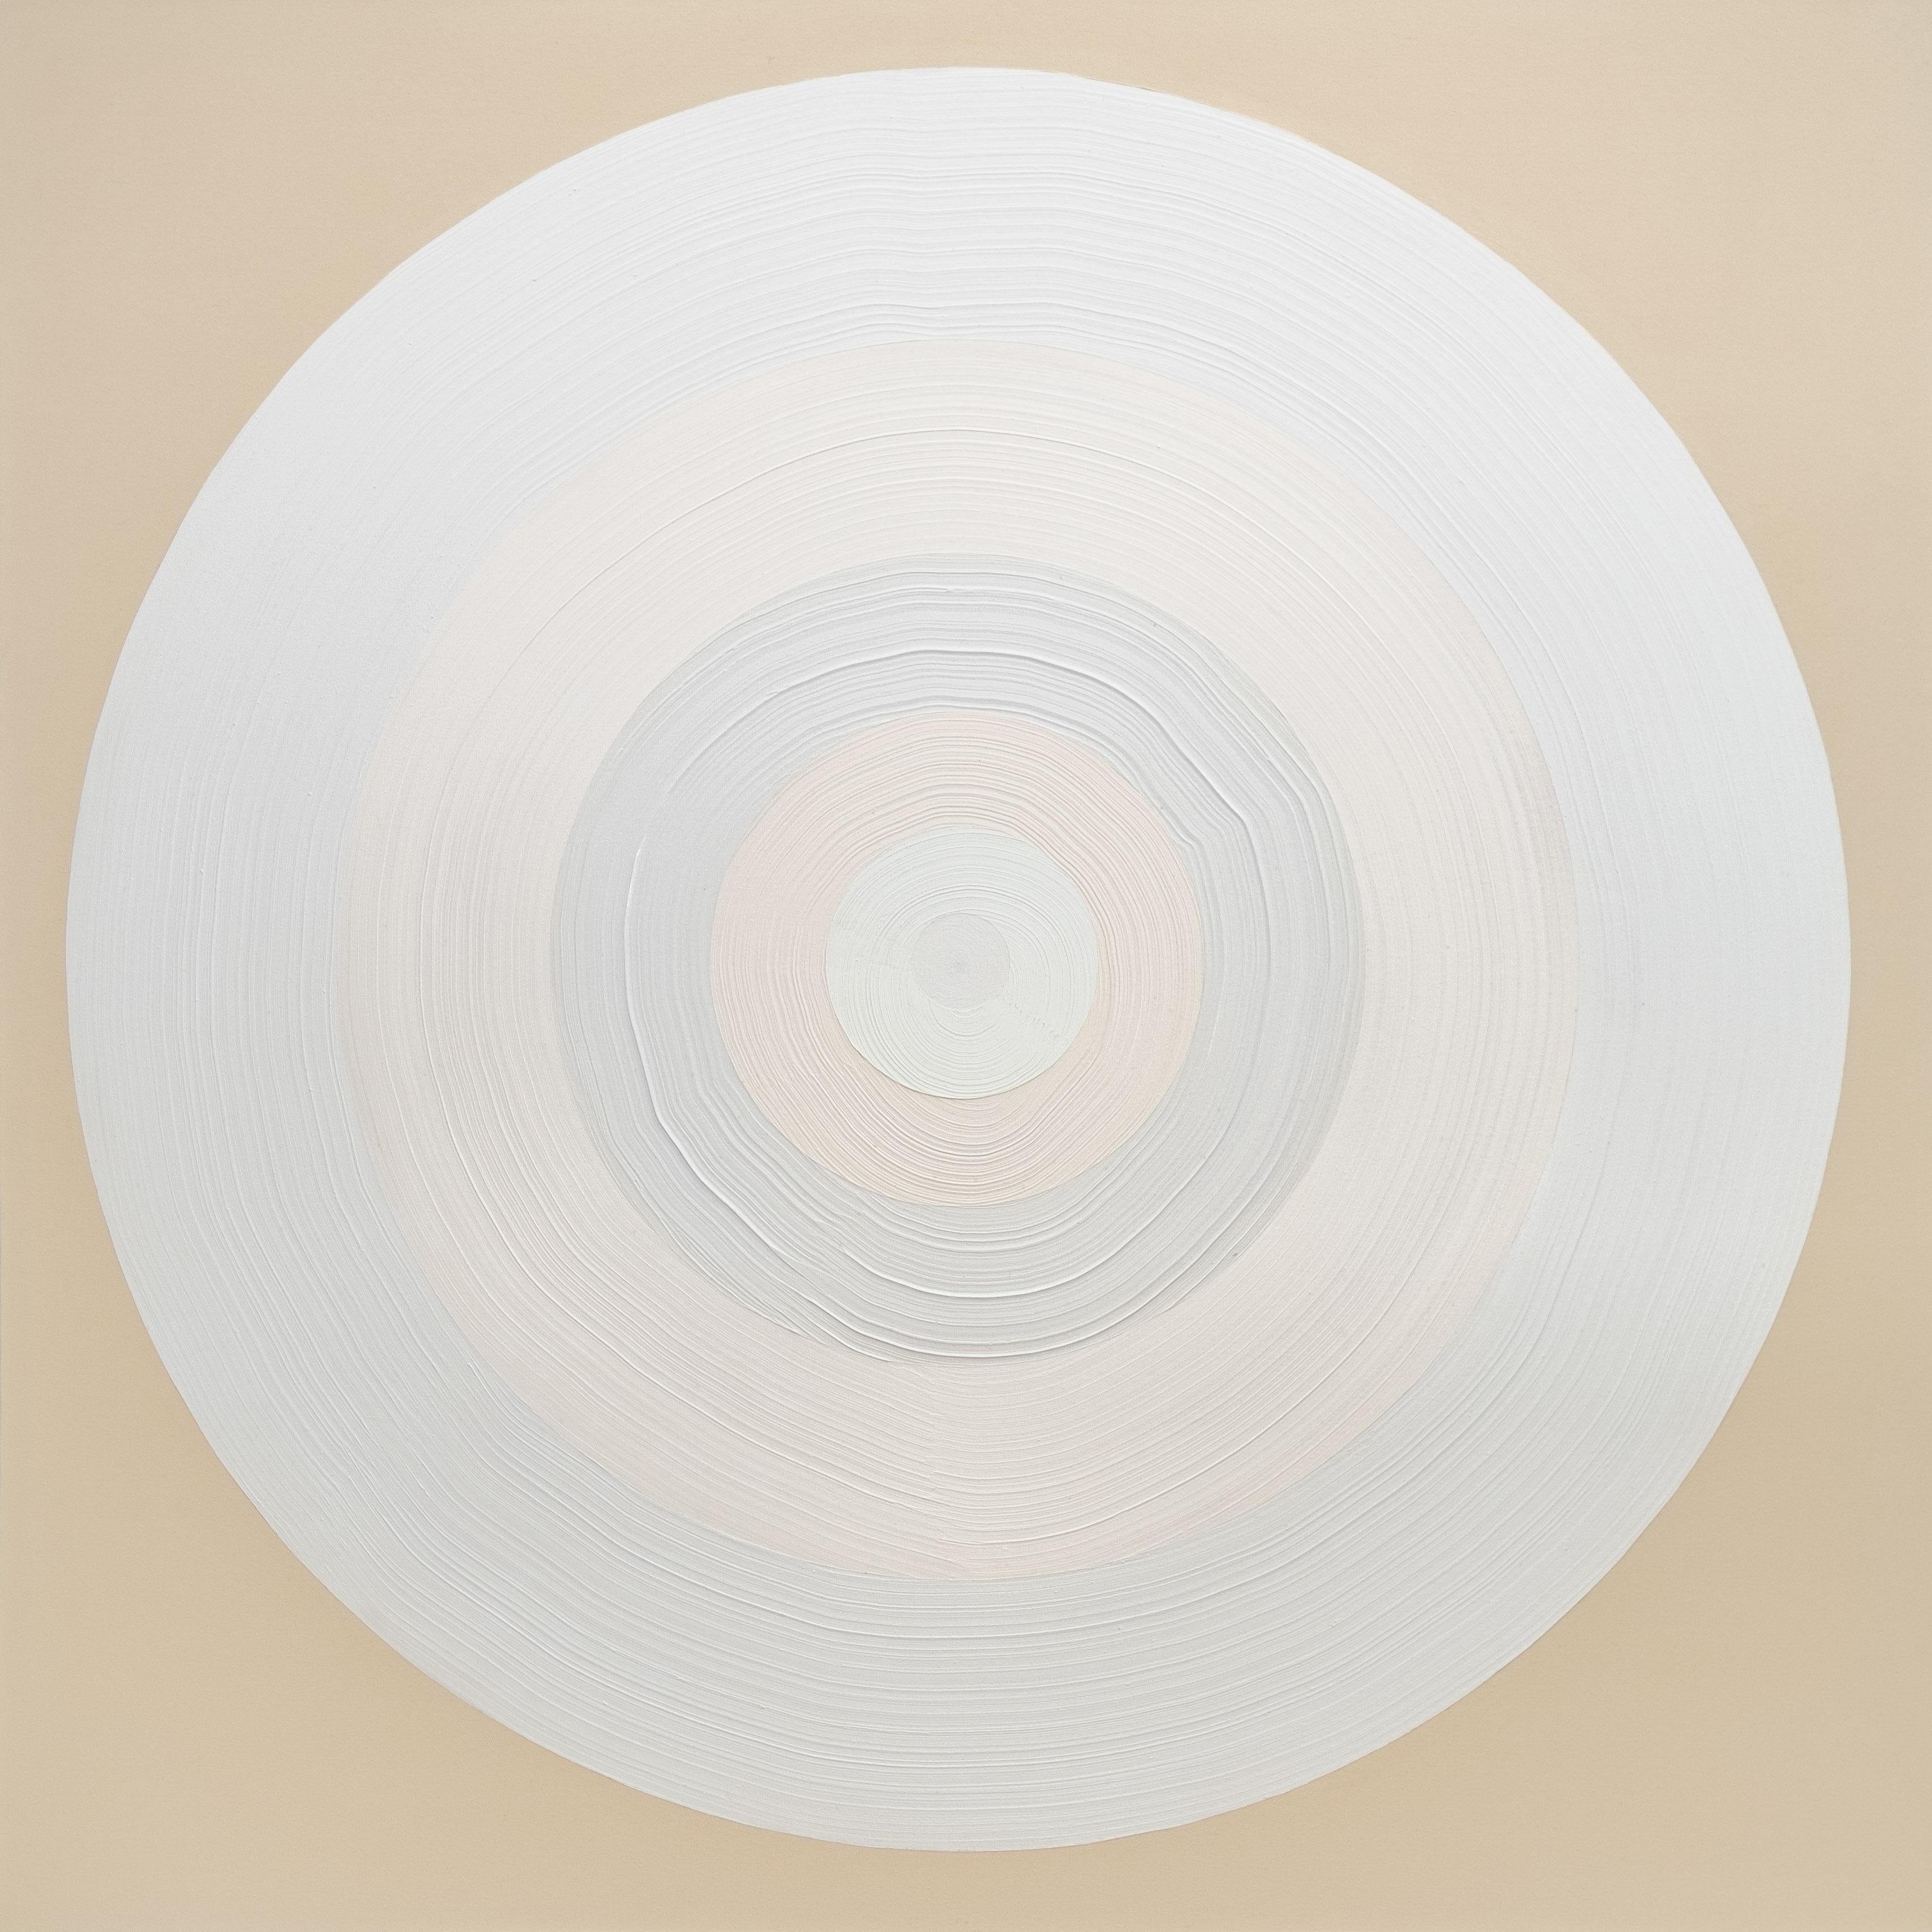 Body Motion Target 2 - abstrait géométrique doux et contemporain, acrylique sur toile - Painting de Yvonne Lammerich